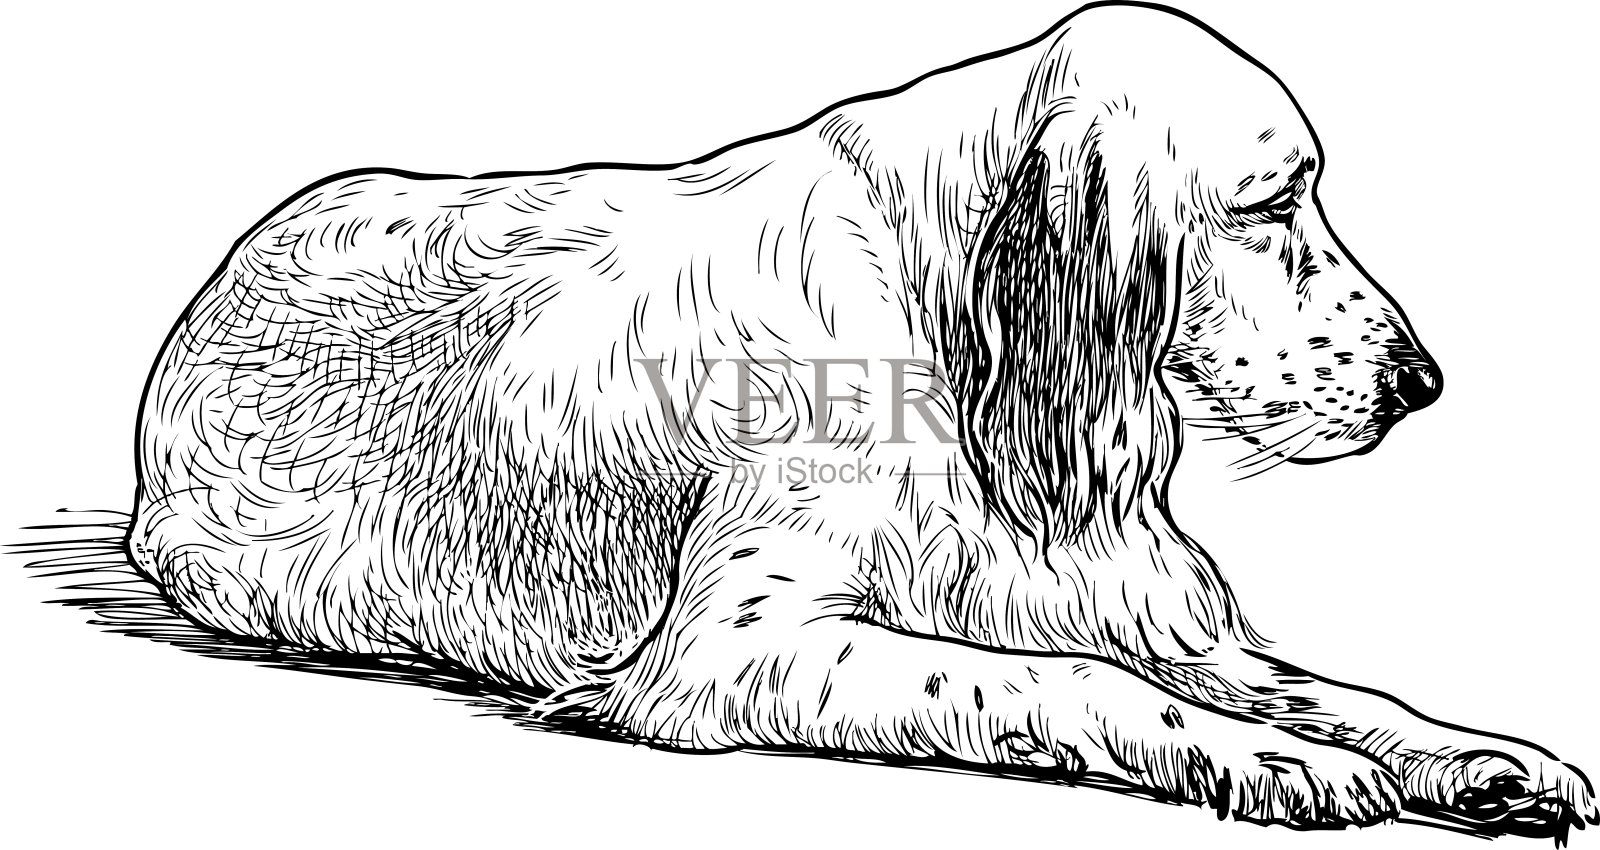 一只悲伤的老猎犬的素描插画图片素材